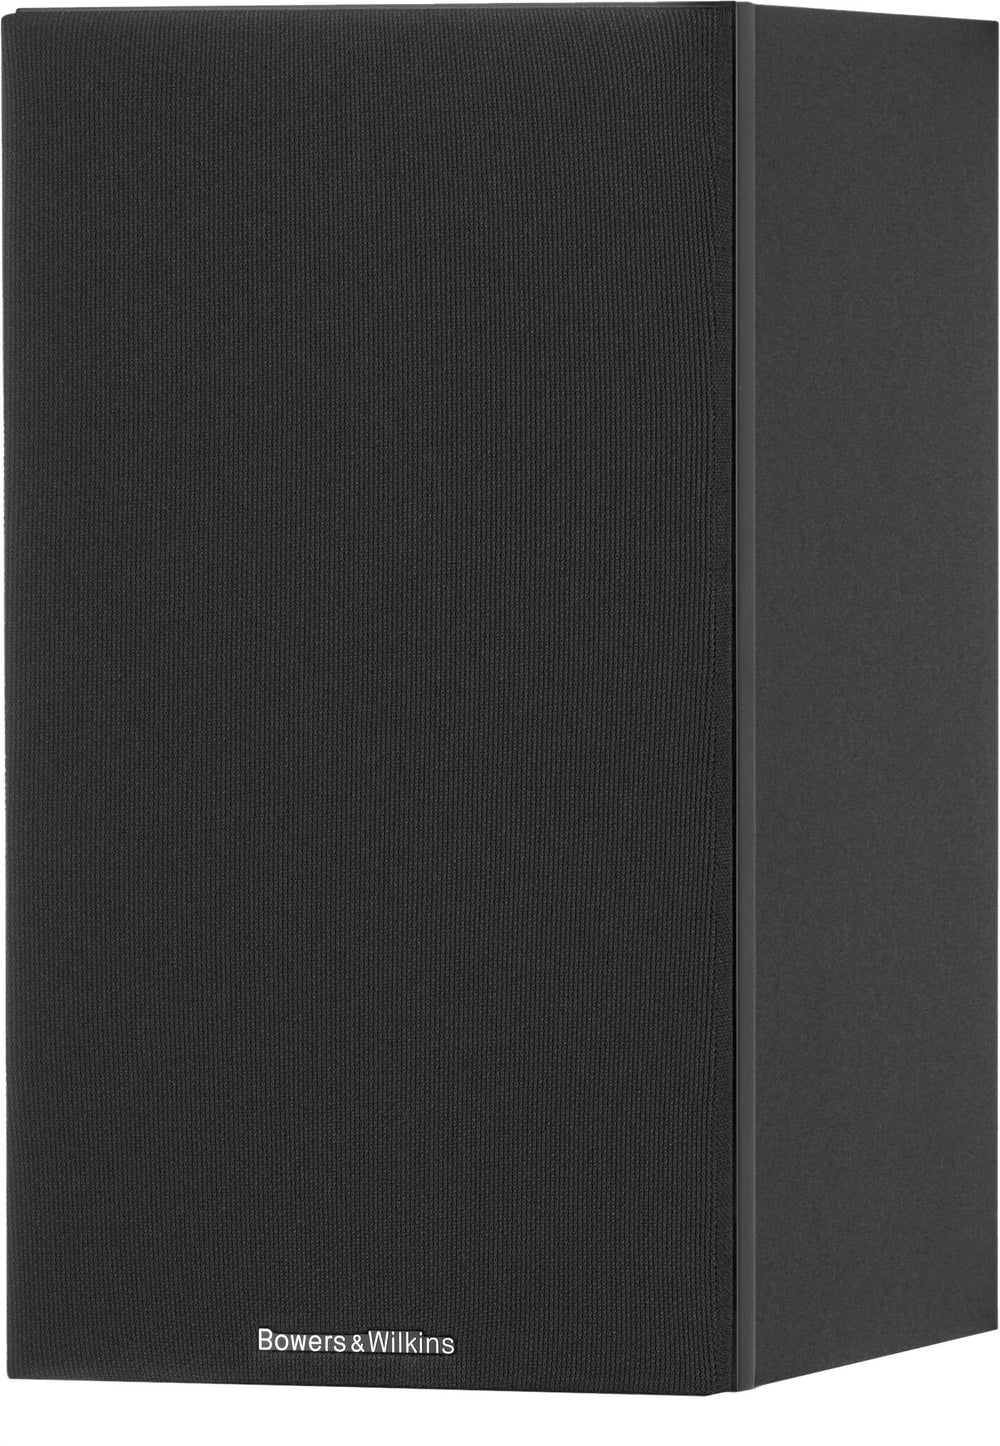 Bowers & Wilkins - 600 S3 Series 2-Way Bookshelf Loudspeakers (Pair) - Black_1